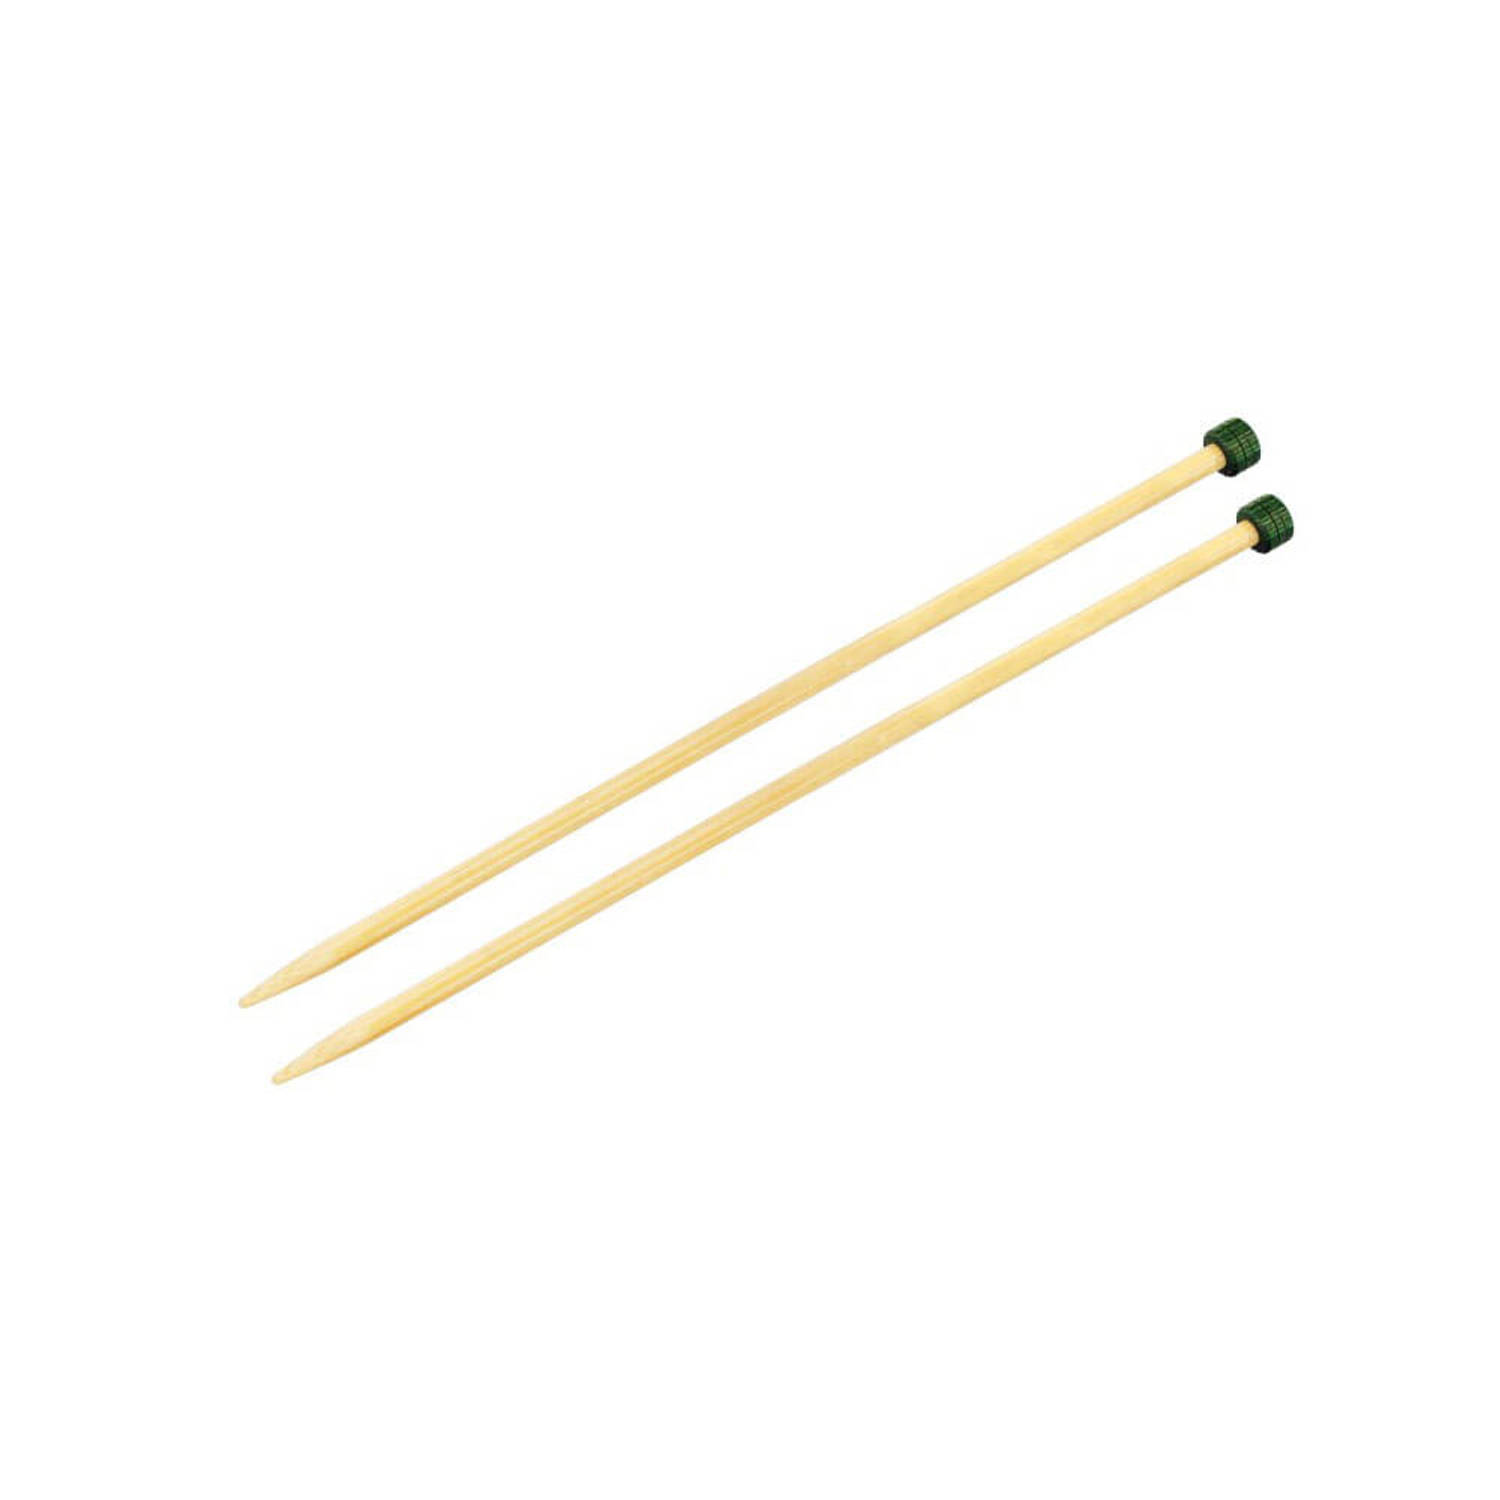 KnitPro Bamboo breinaalden 33cm 7.00mm.